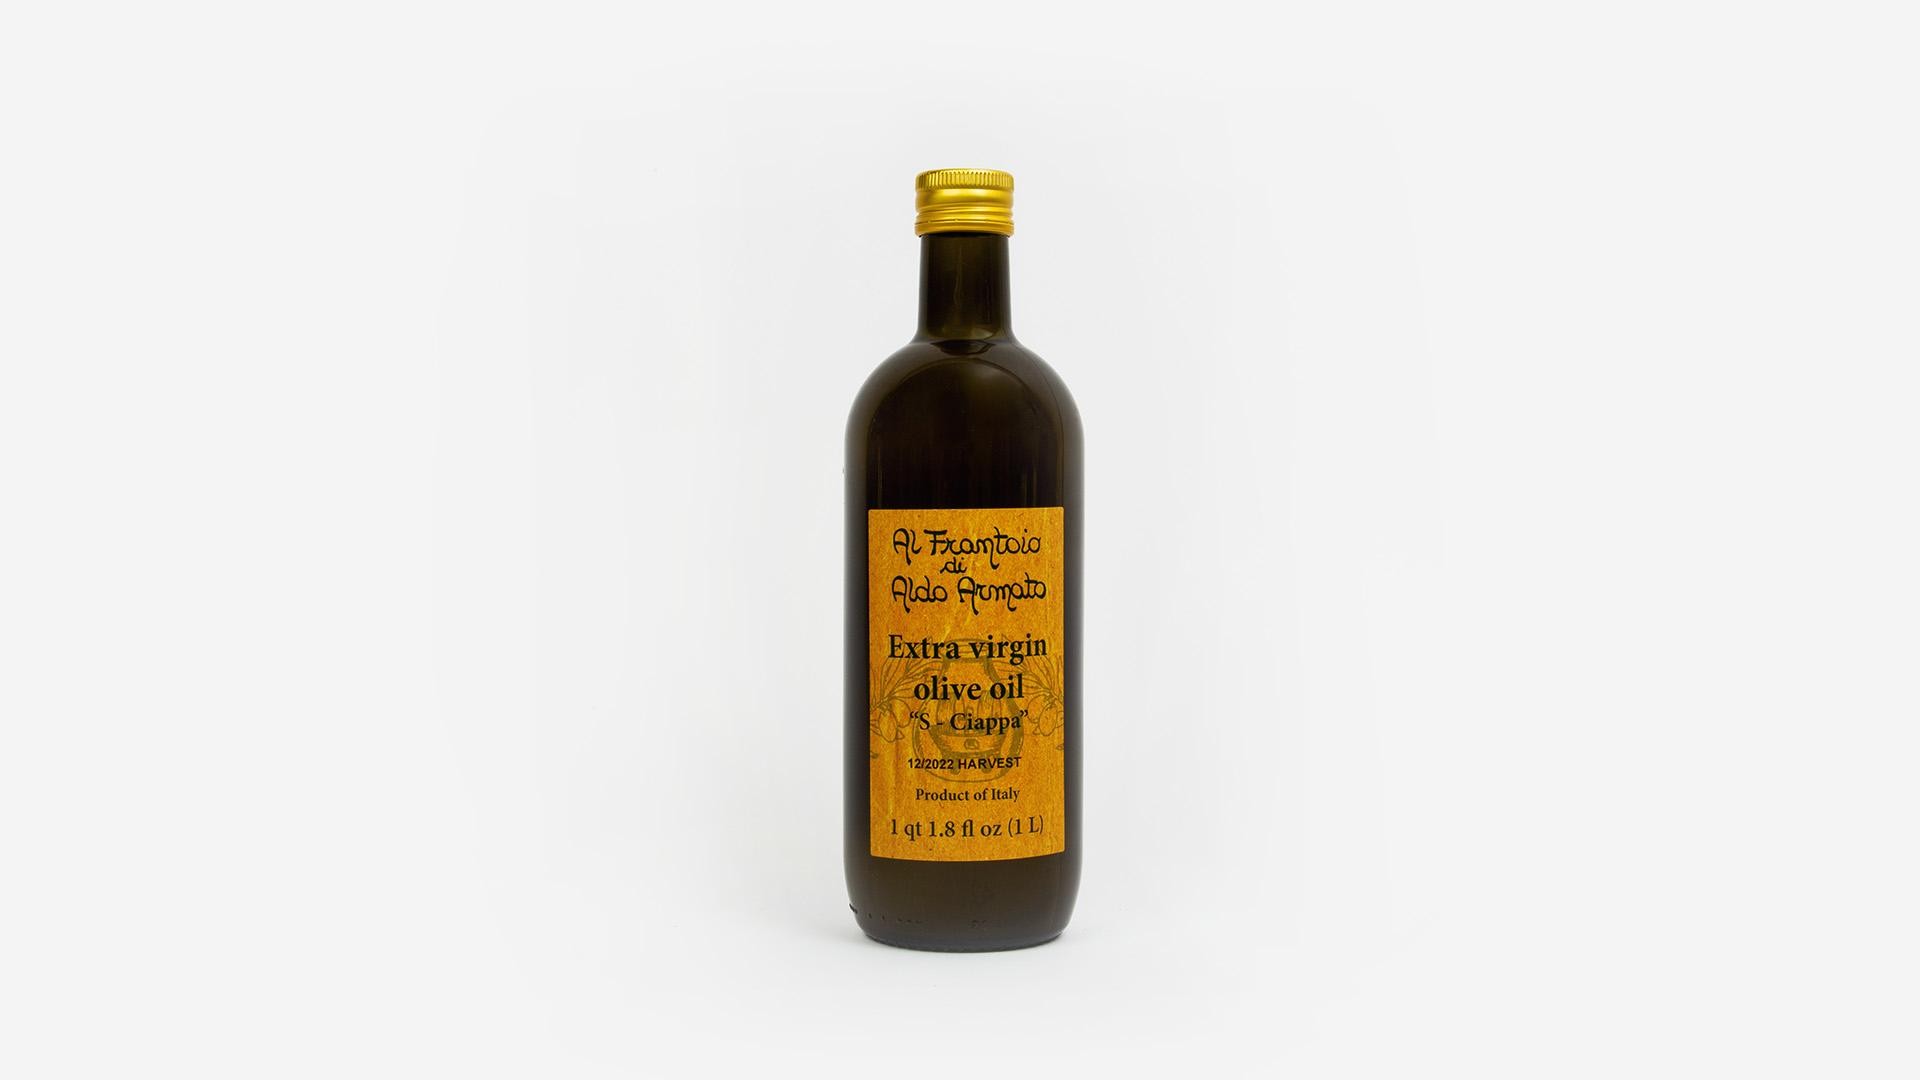 Aldo Armato S. Ciappa Extra Virgin Olive Oil (1 L)